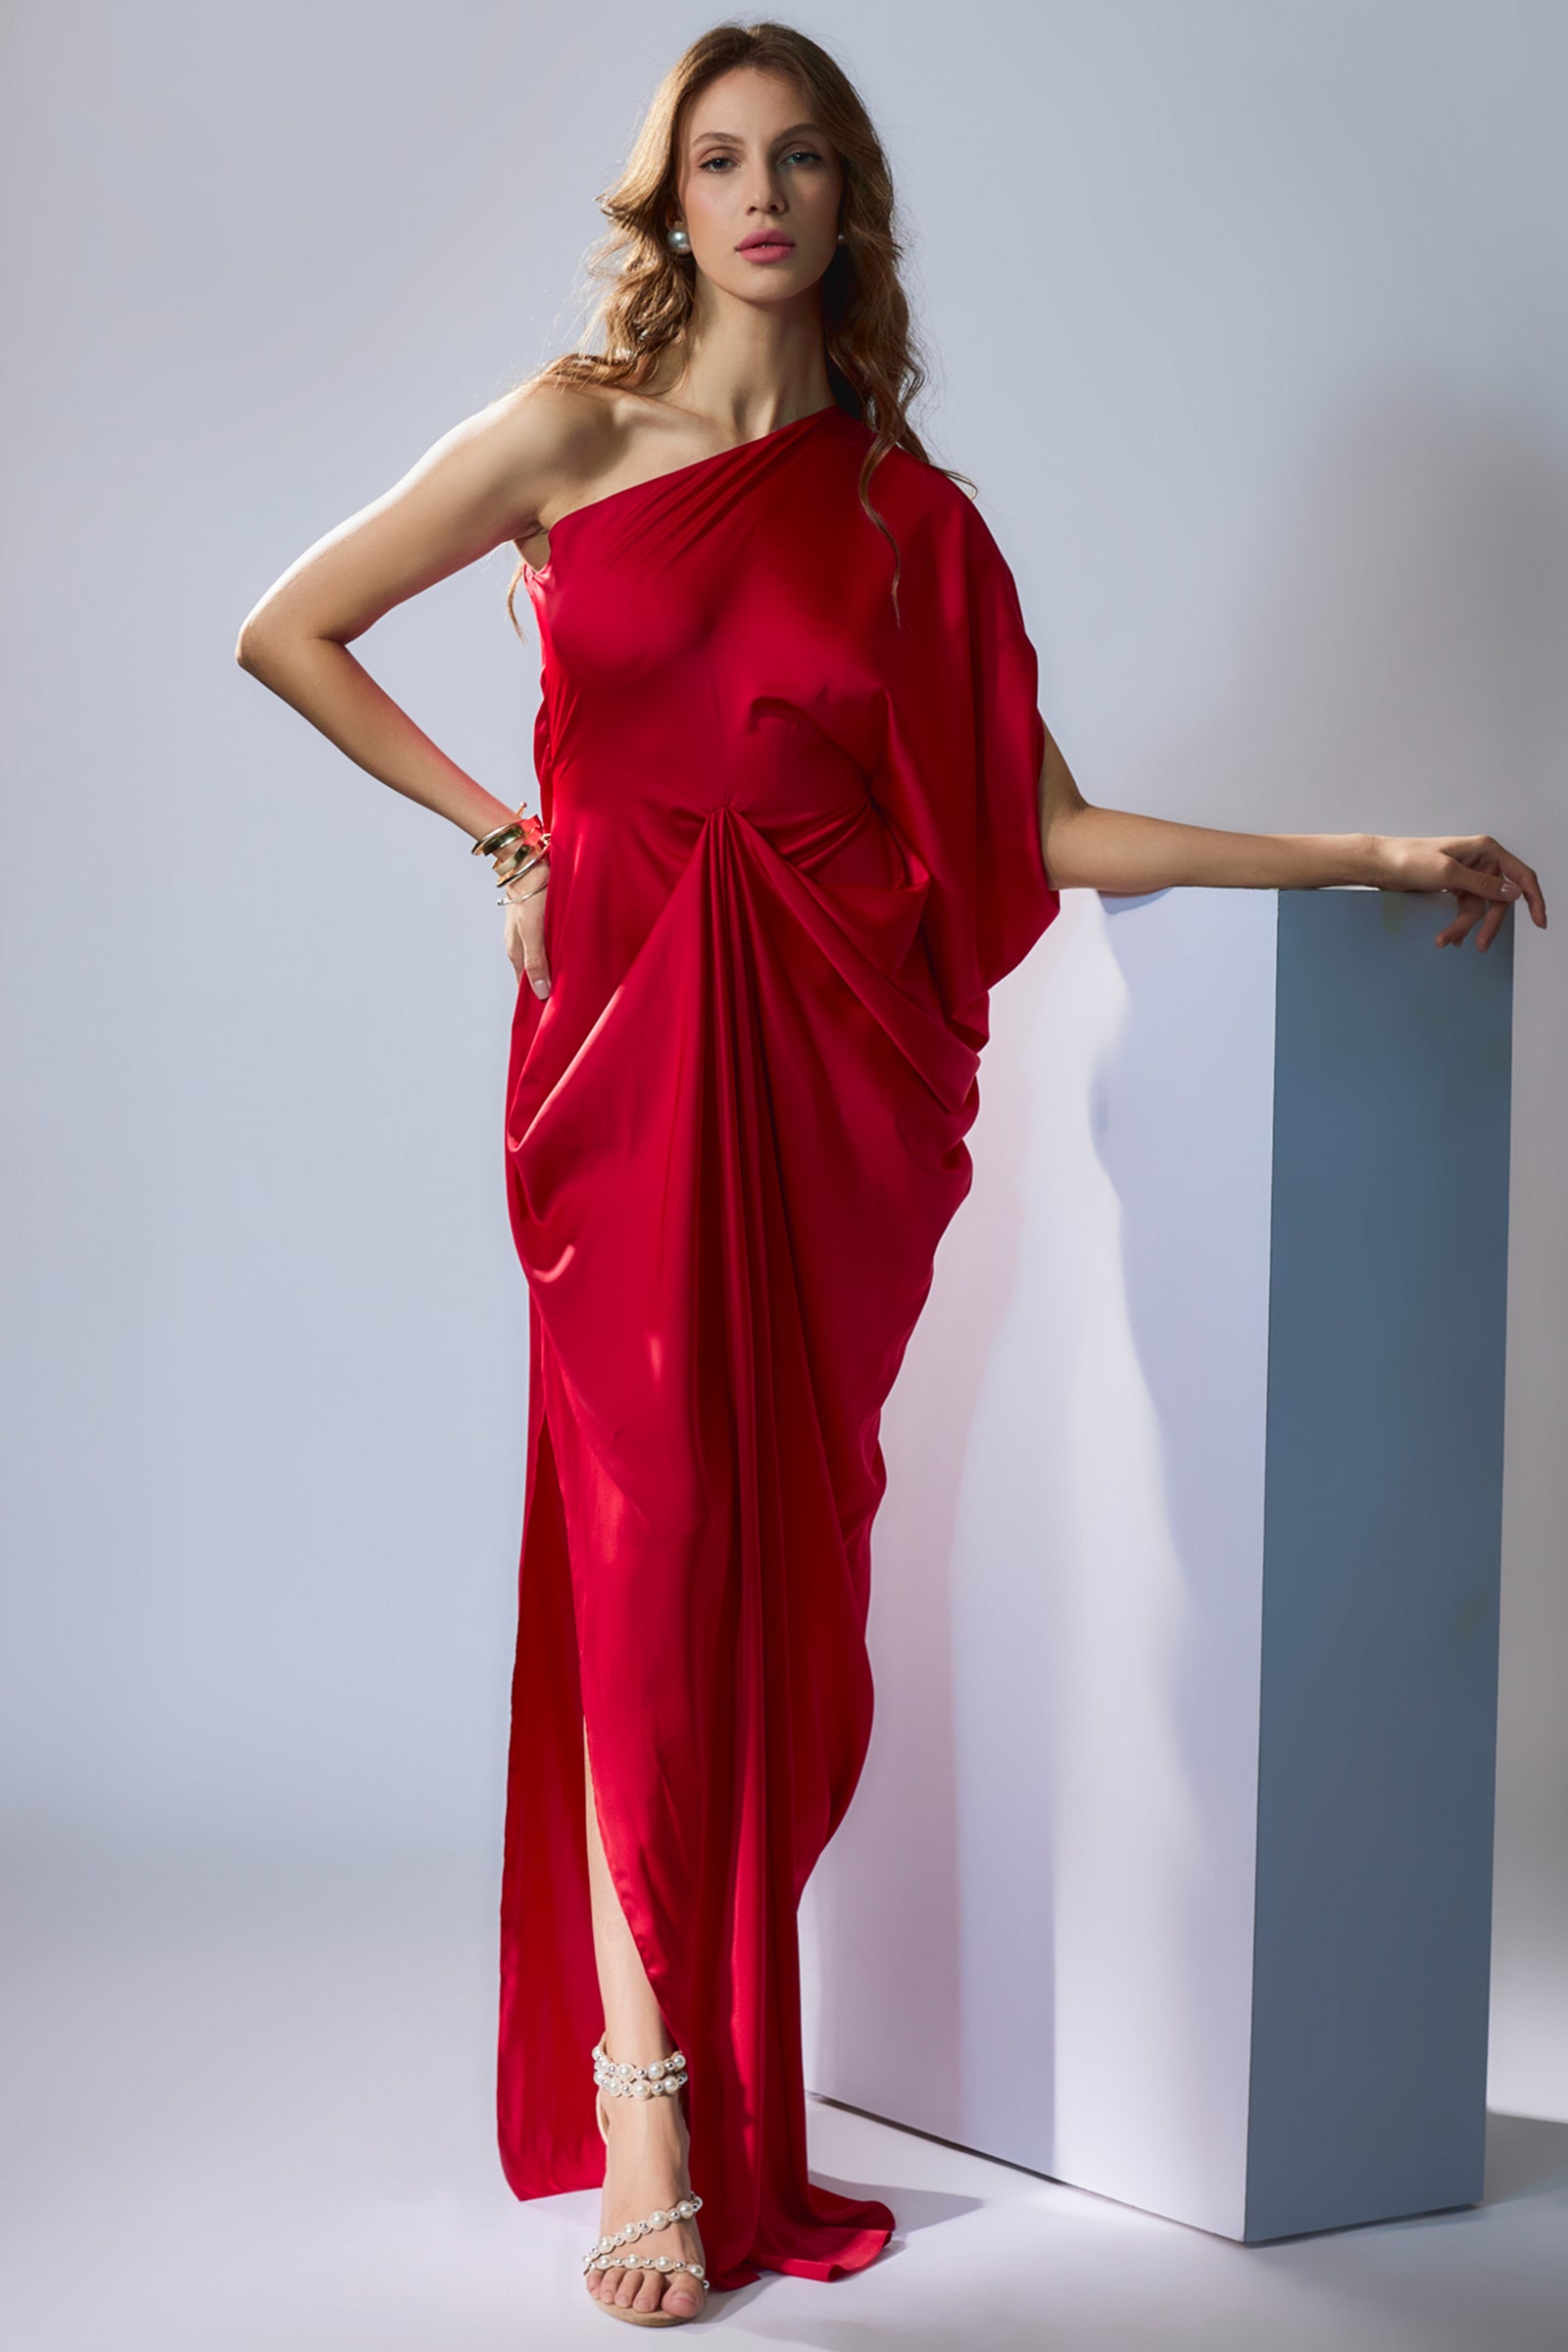 Ka Sha | Women's Designer Fashion | Shop online at Ogaan.com